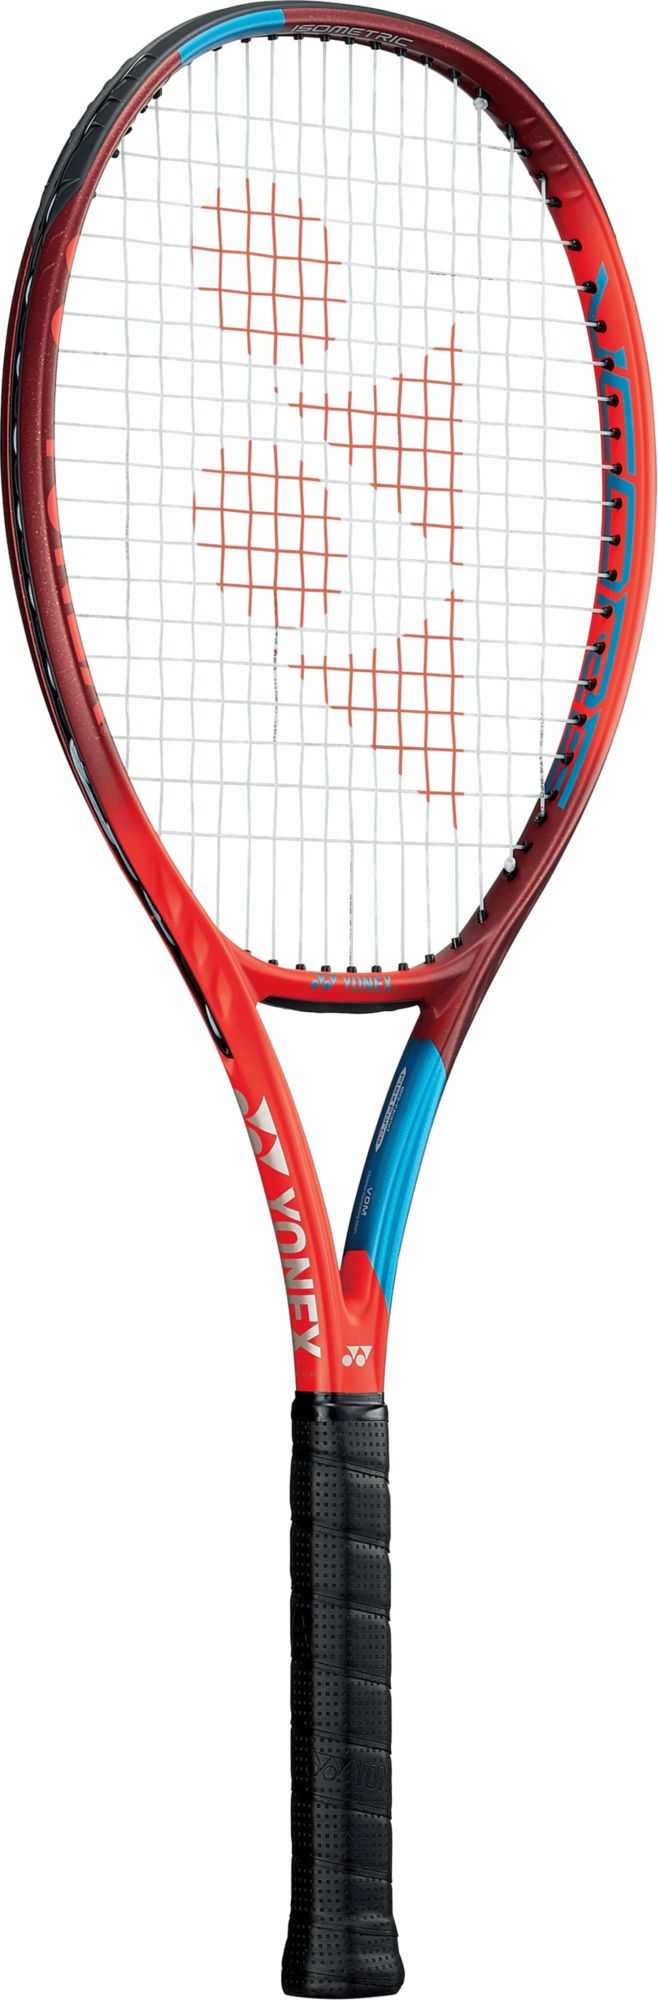 Yonex VCore 100 Tennis Racquet - Unstrung, Mid Plus, Tango Red